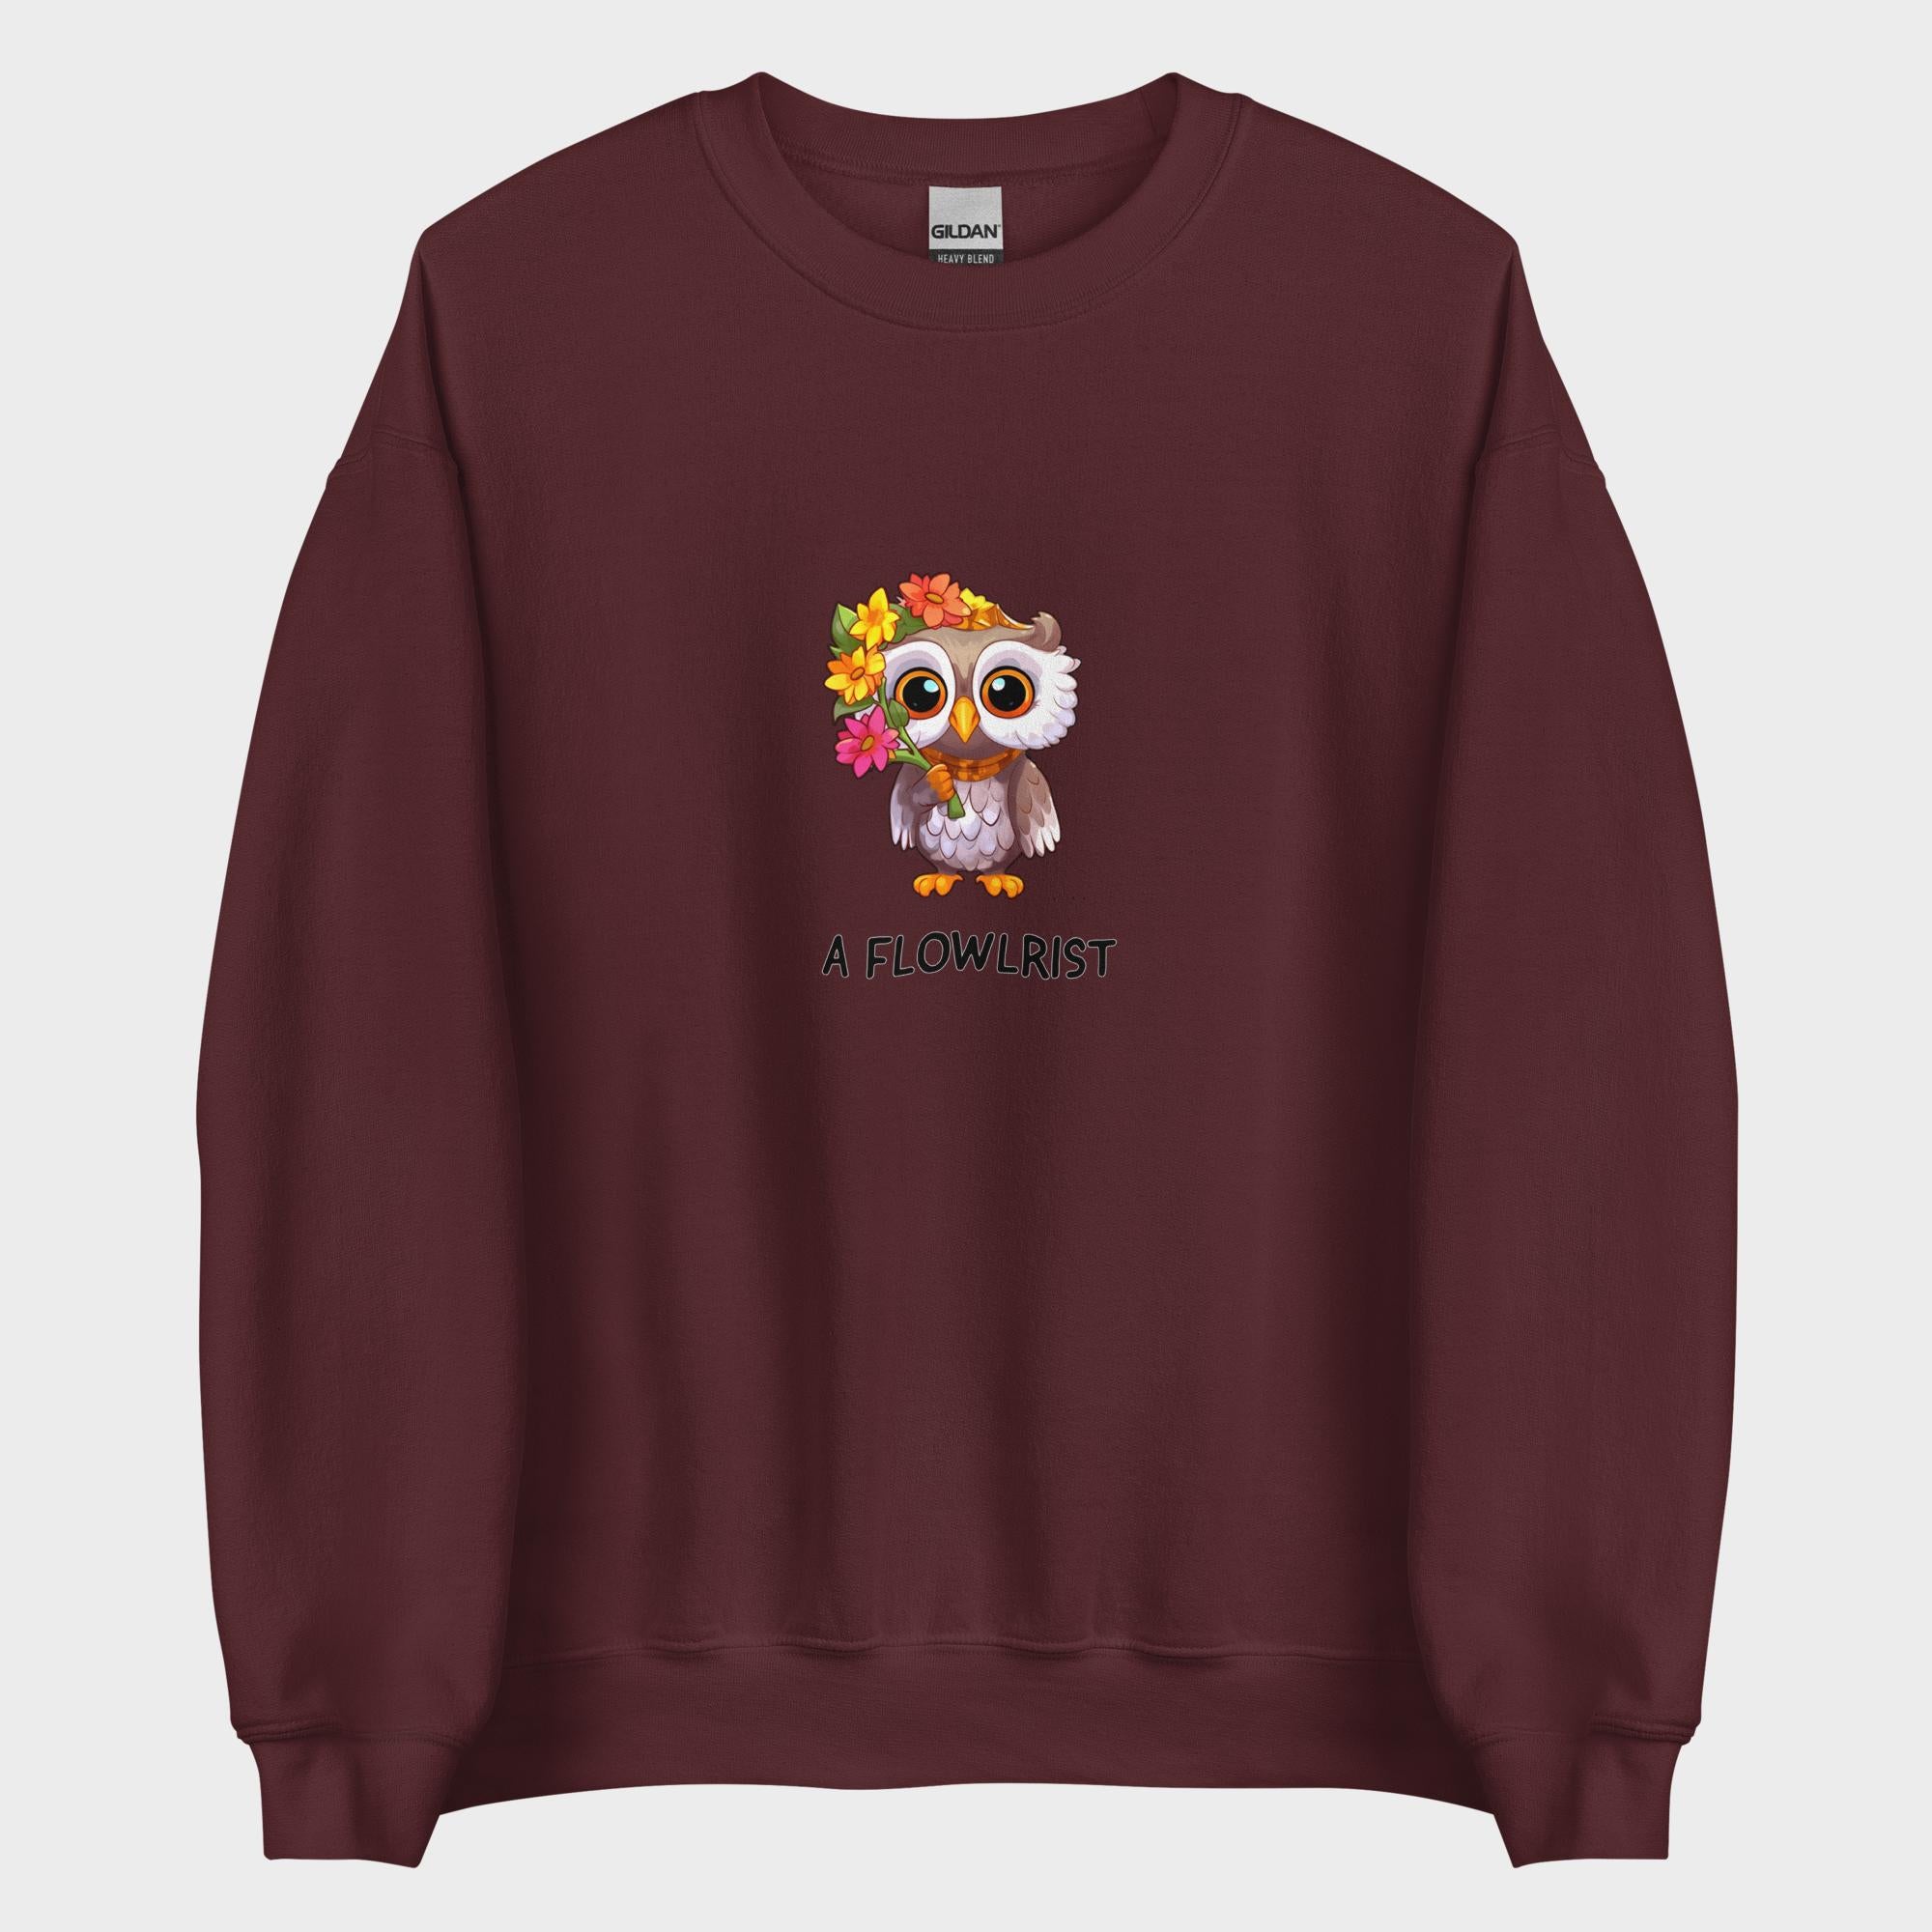 A Flowlrist - Sweatshirt